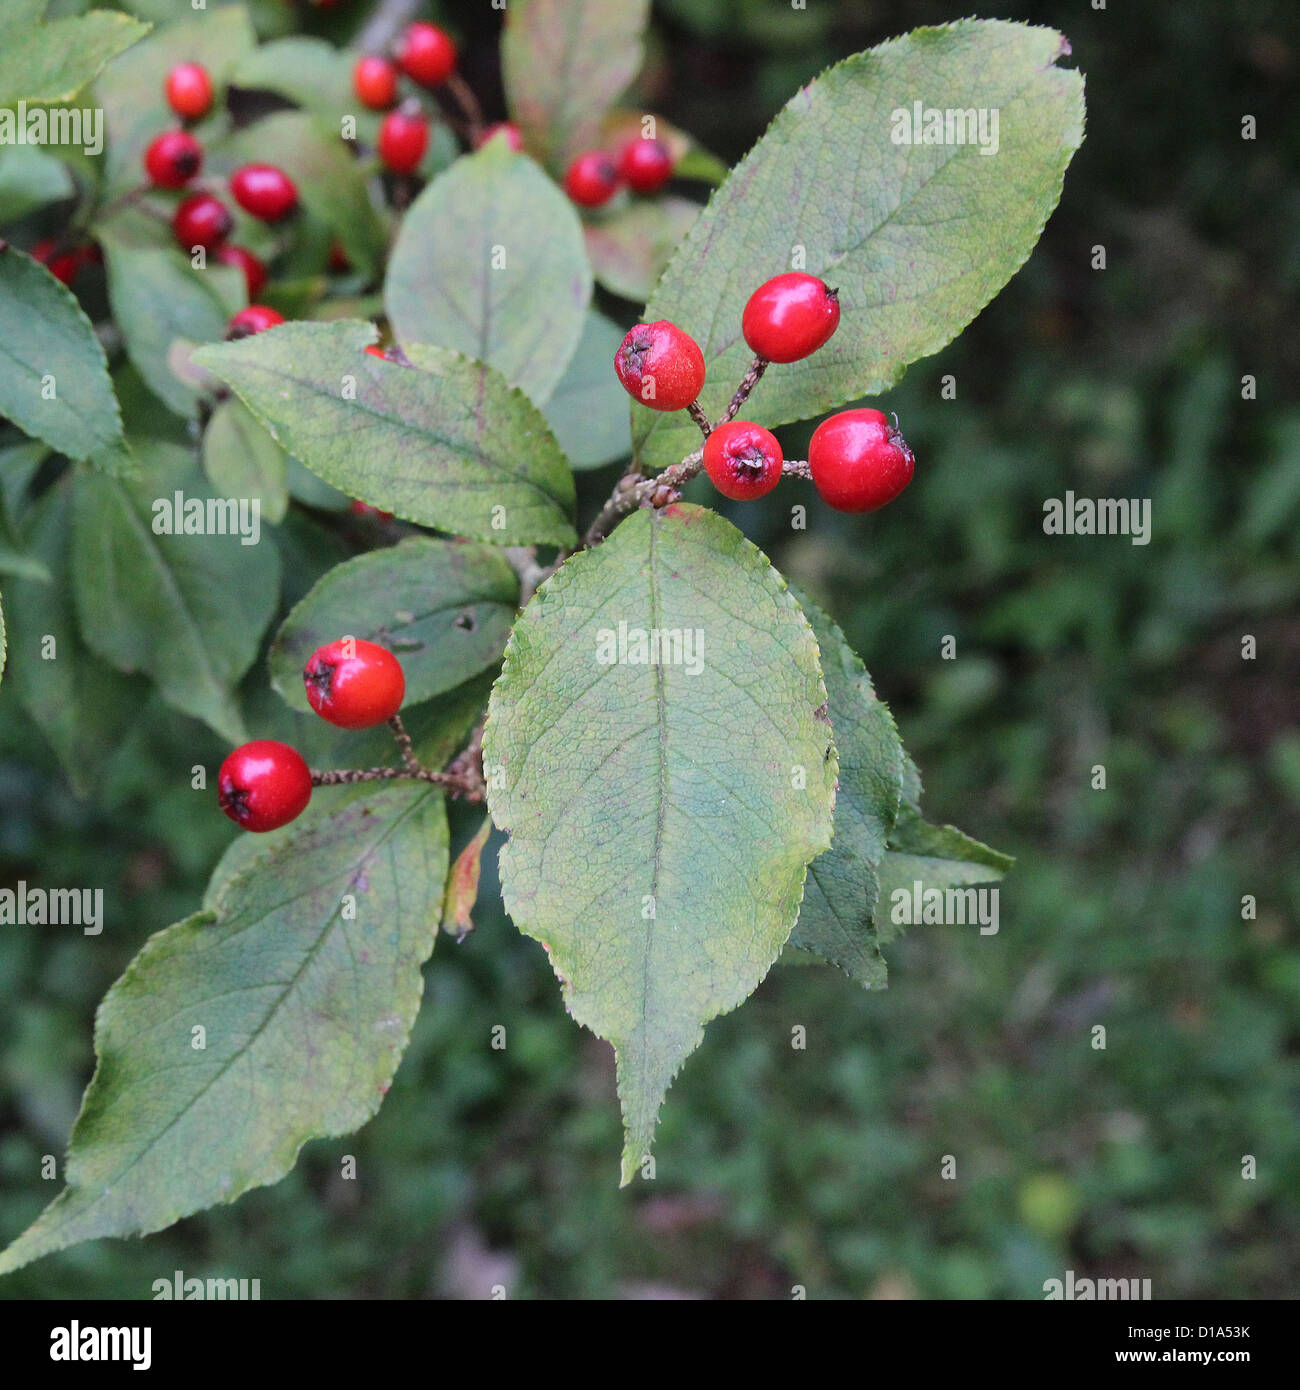 Photinia villosa ( Oriental Photinia ) in Autumn Stock Photo